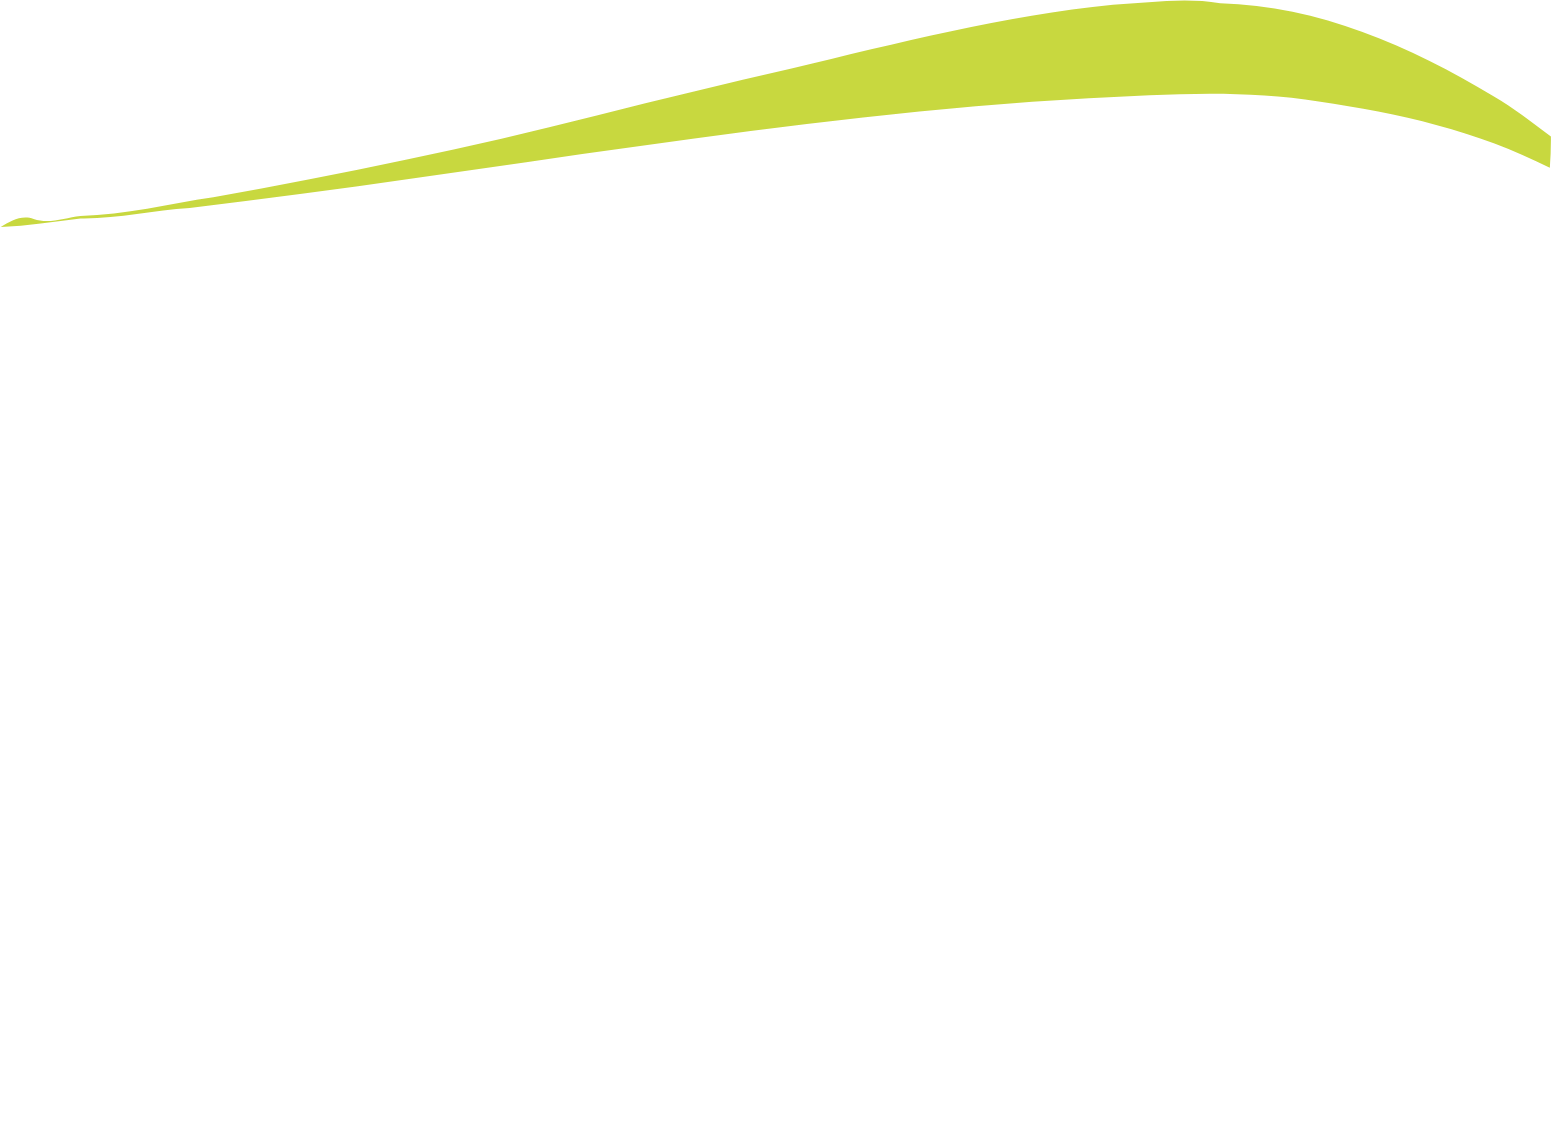 Northeast Bank logo for dark backgrounds (transparent PNG)